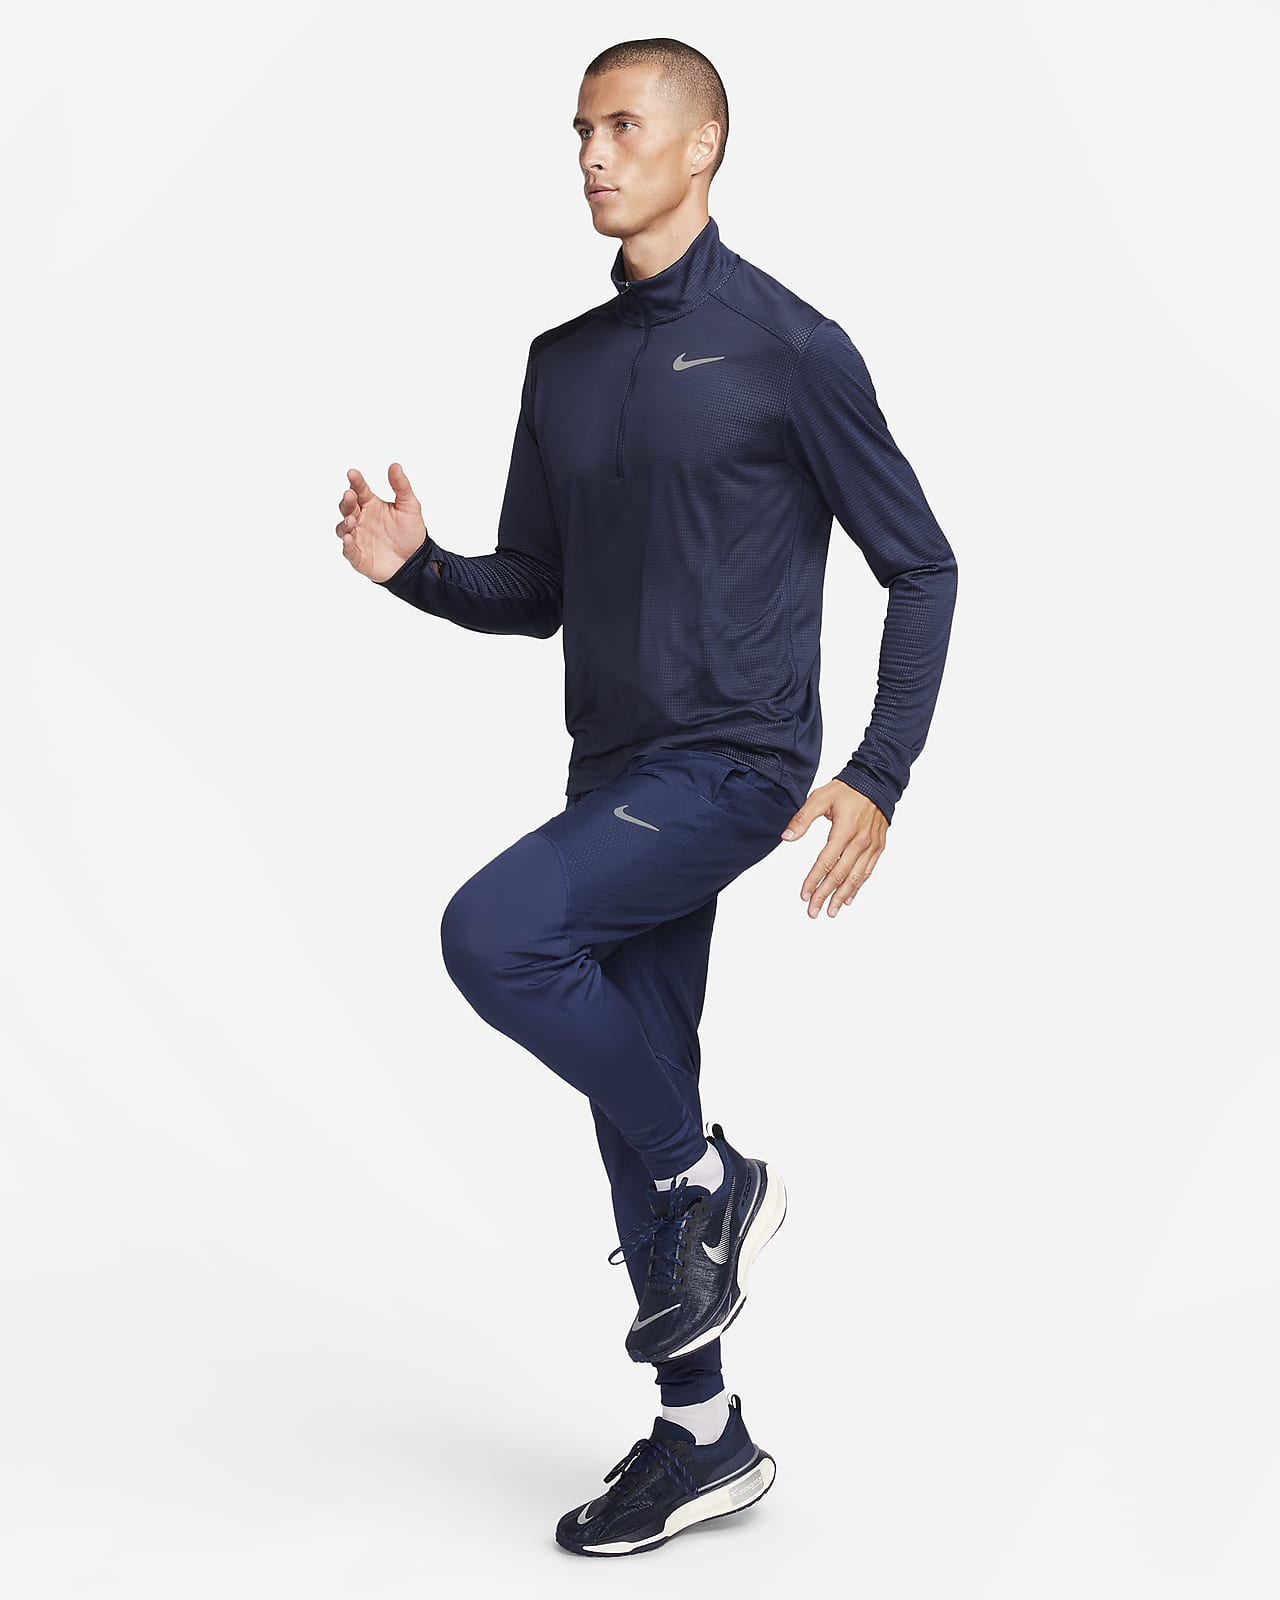 exceso Noroeste Hablar en voz alta Nike Pacer Camiseta de running con media cremallera - Hombre. Nike ES